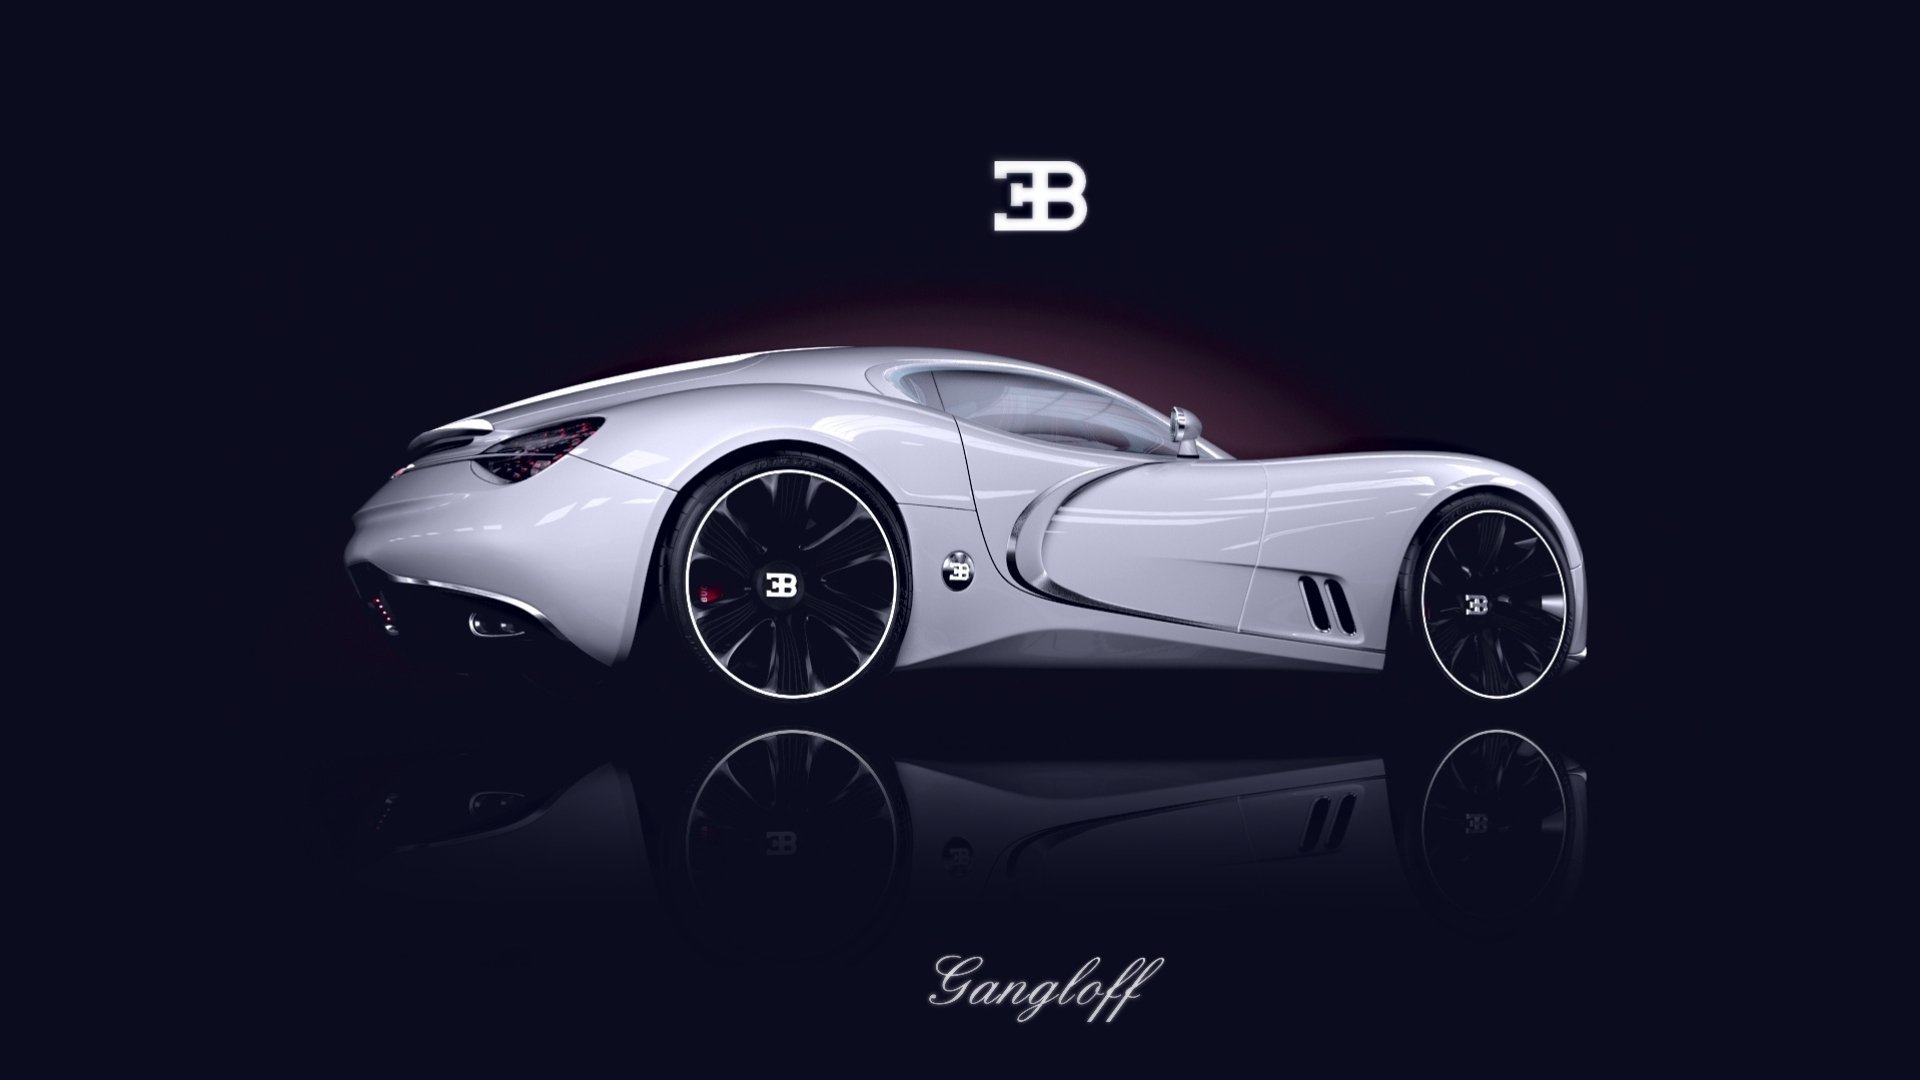 HQ Bugatti Gangloff Wallpapers | File 98.34Kb